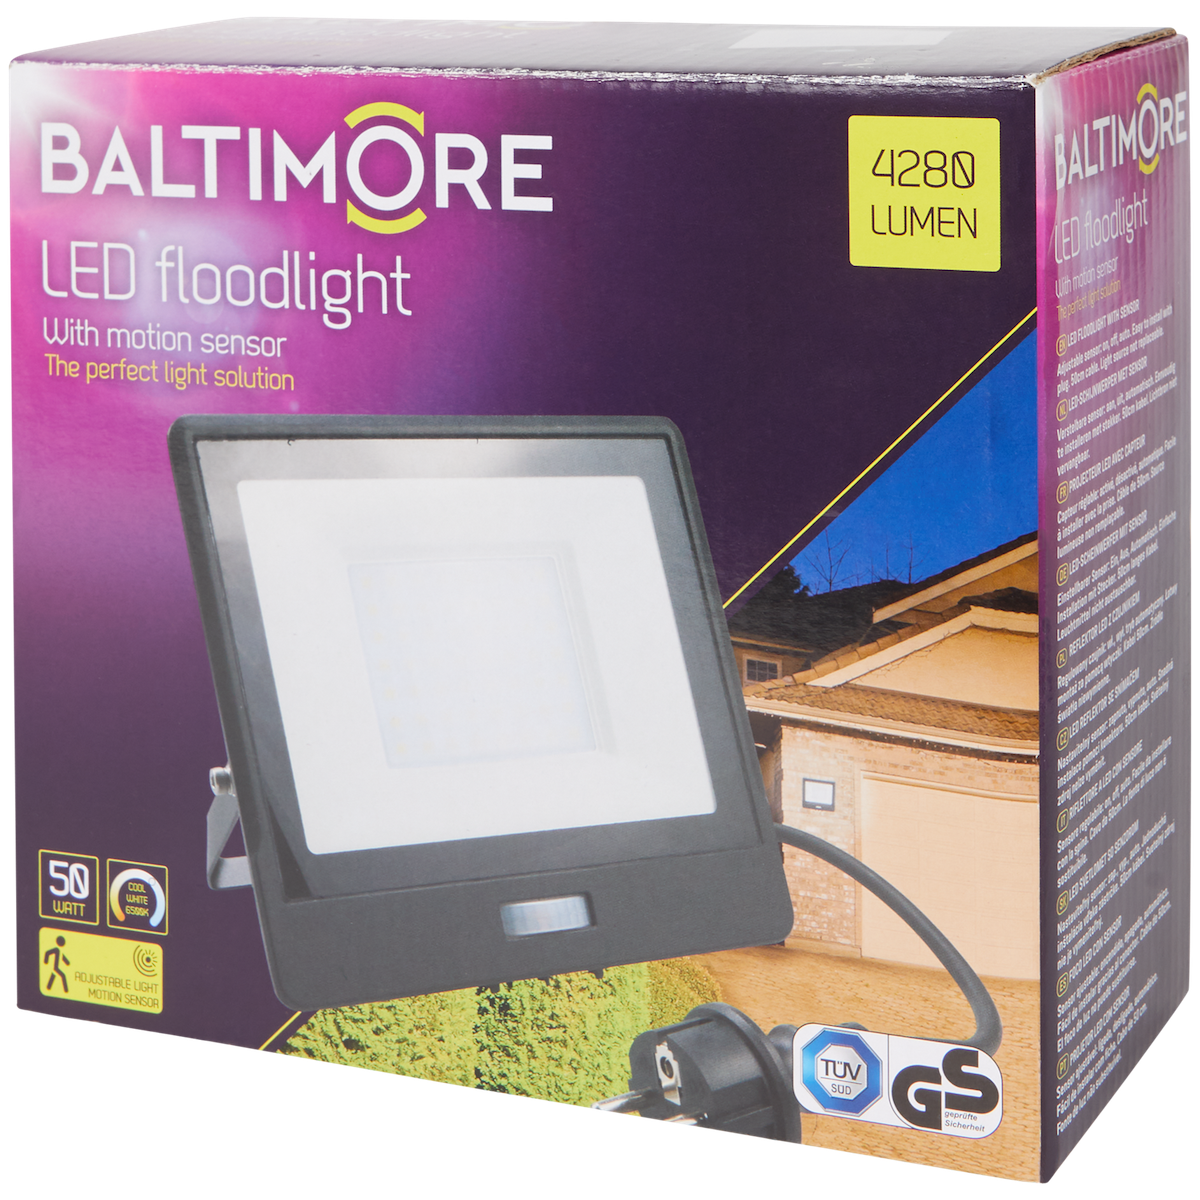 Baltimore LED-Scheinwerfer

50 Watt | 4280 Lumen - DeinMarkt.at 